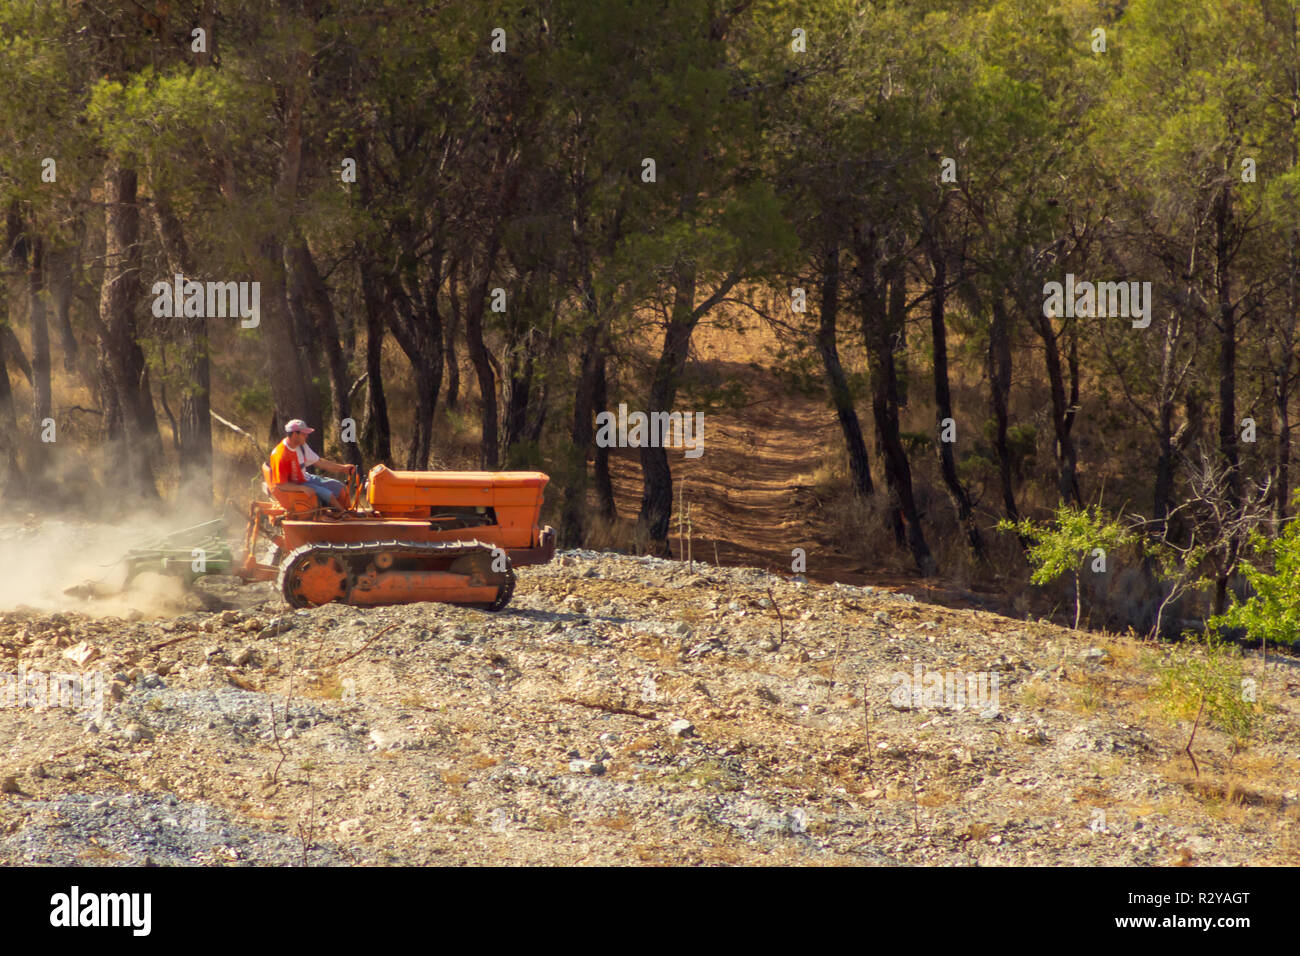 Tracteur à chenilles Fiat 605C labourant une pente Almond Grove, vallée d'Almanzora, province d'Almeria, Andalousie, Espagne Banque D'Images